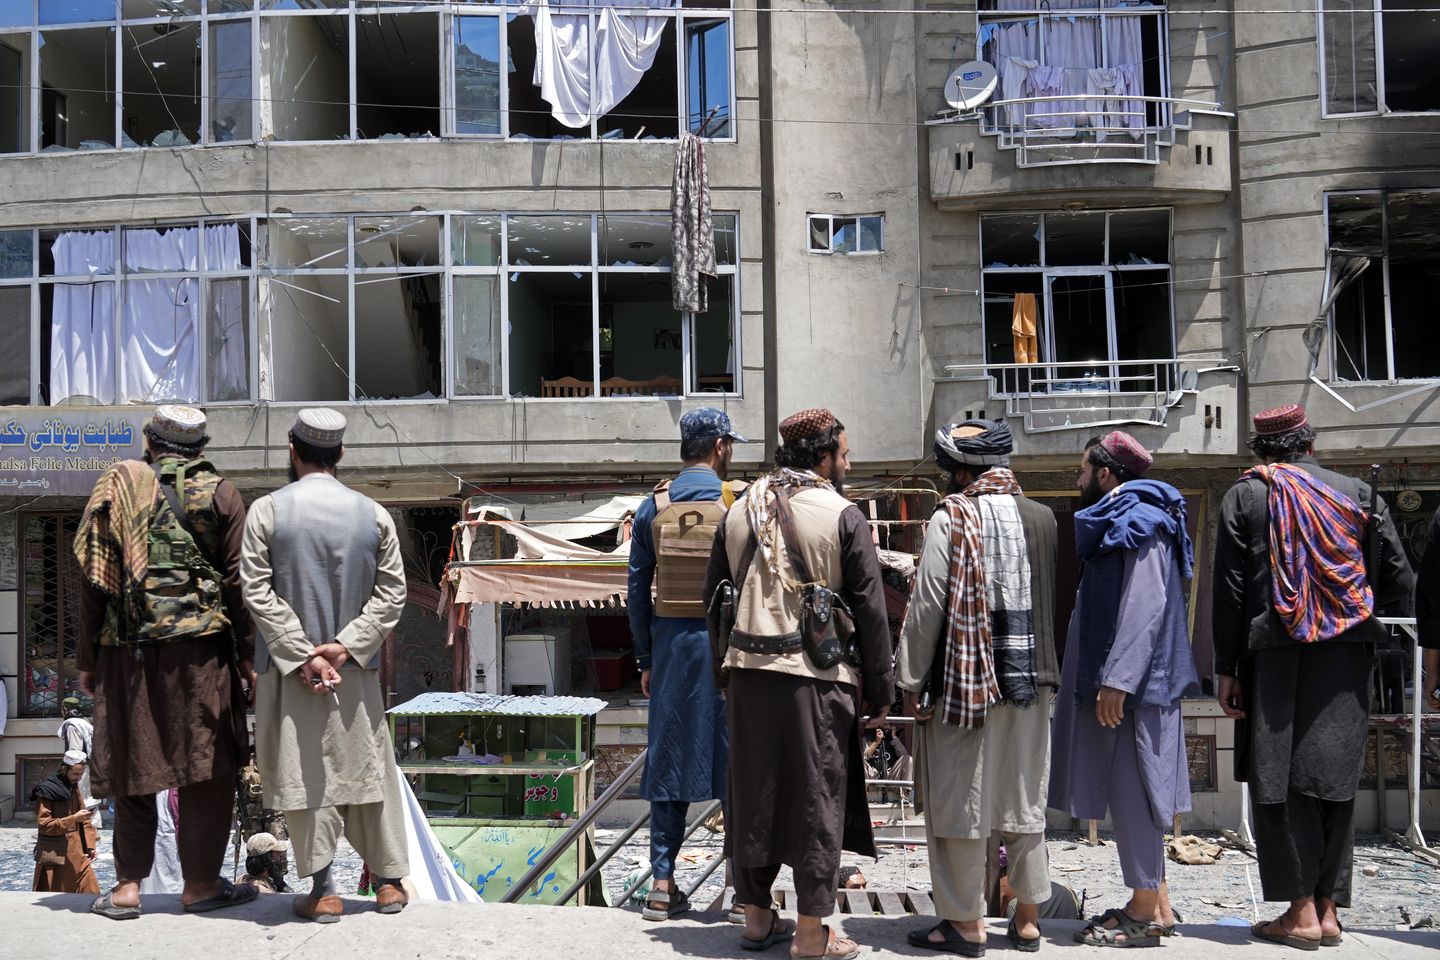 Eastern Afghanistan earthquake kills at least 255 people